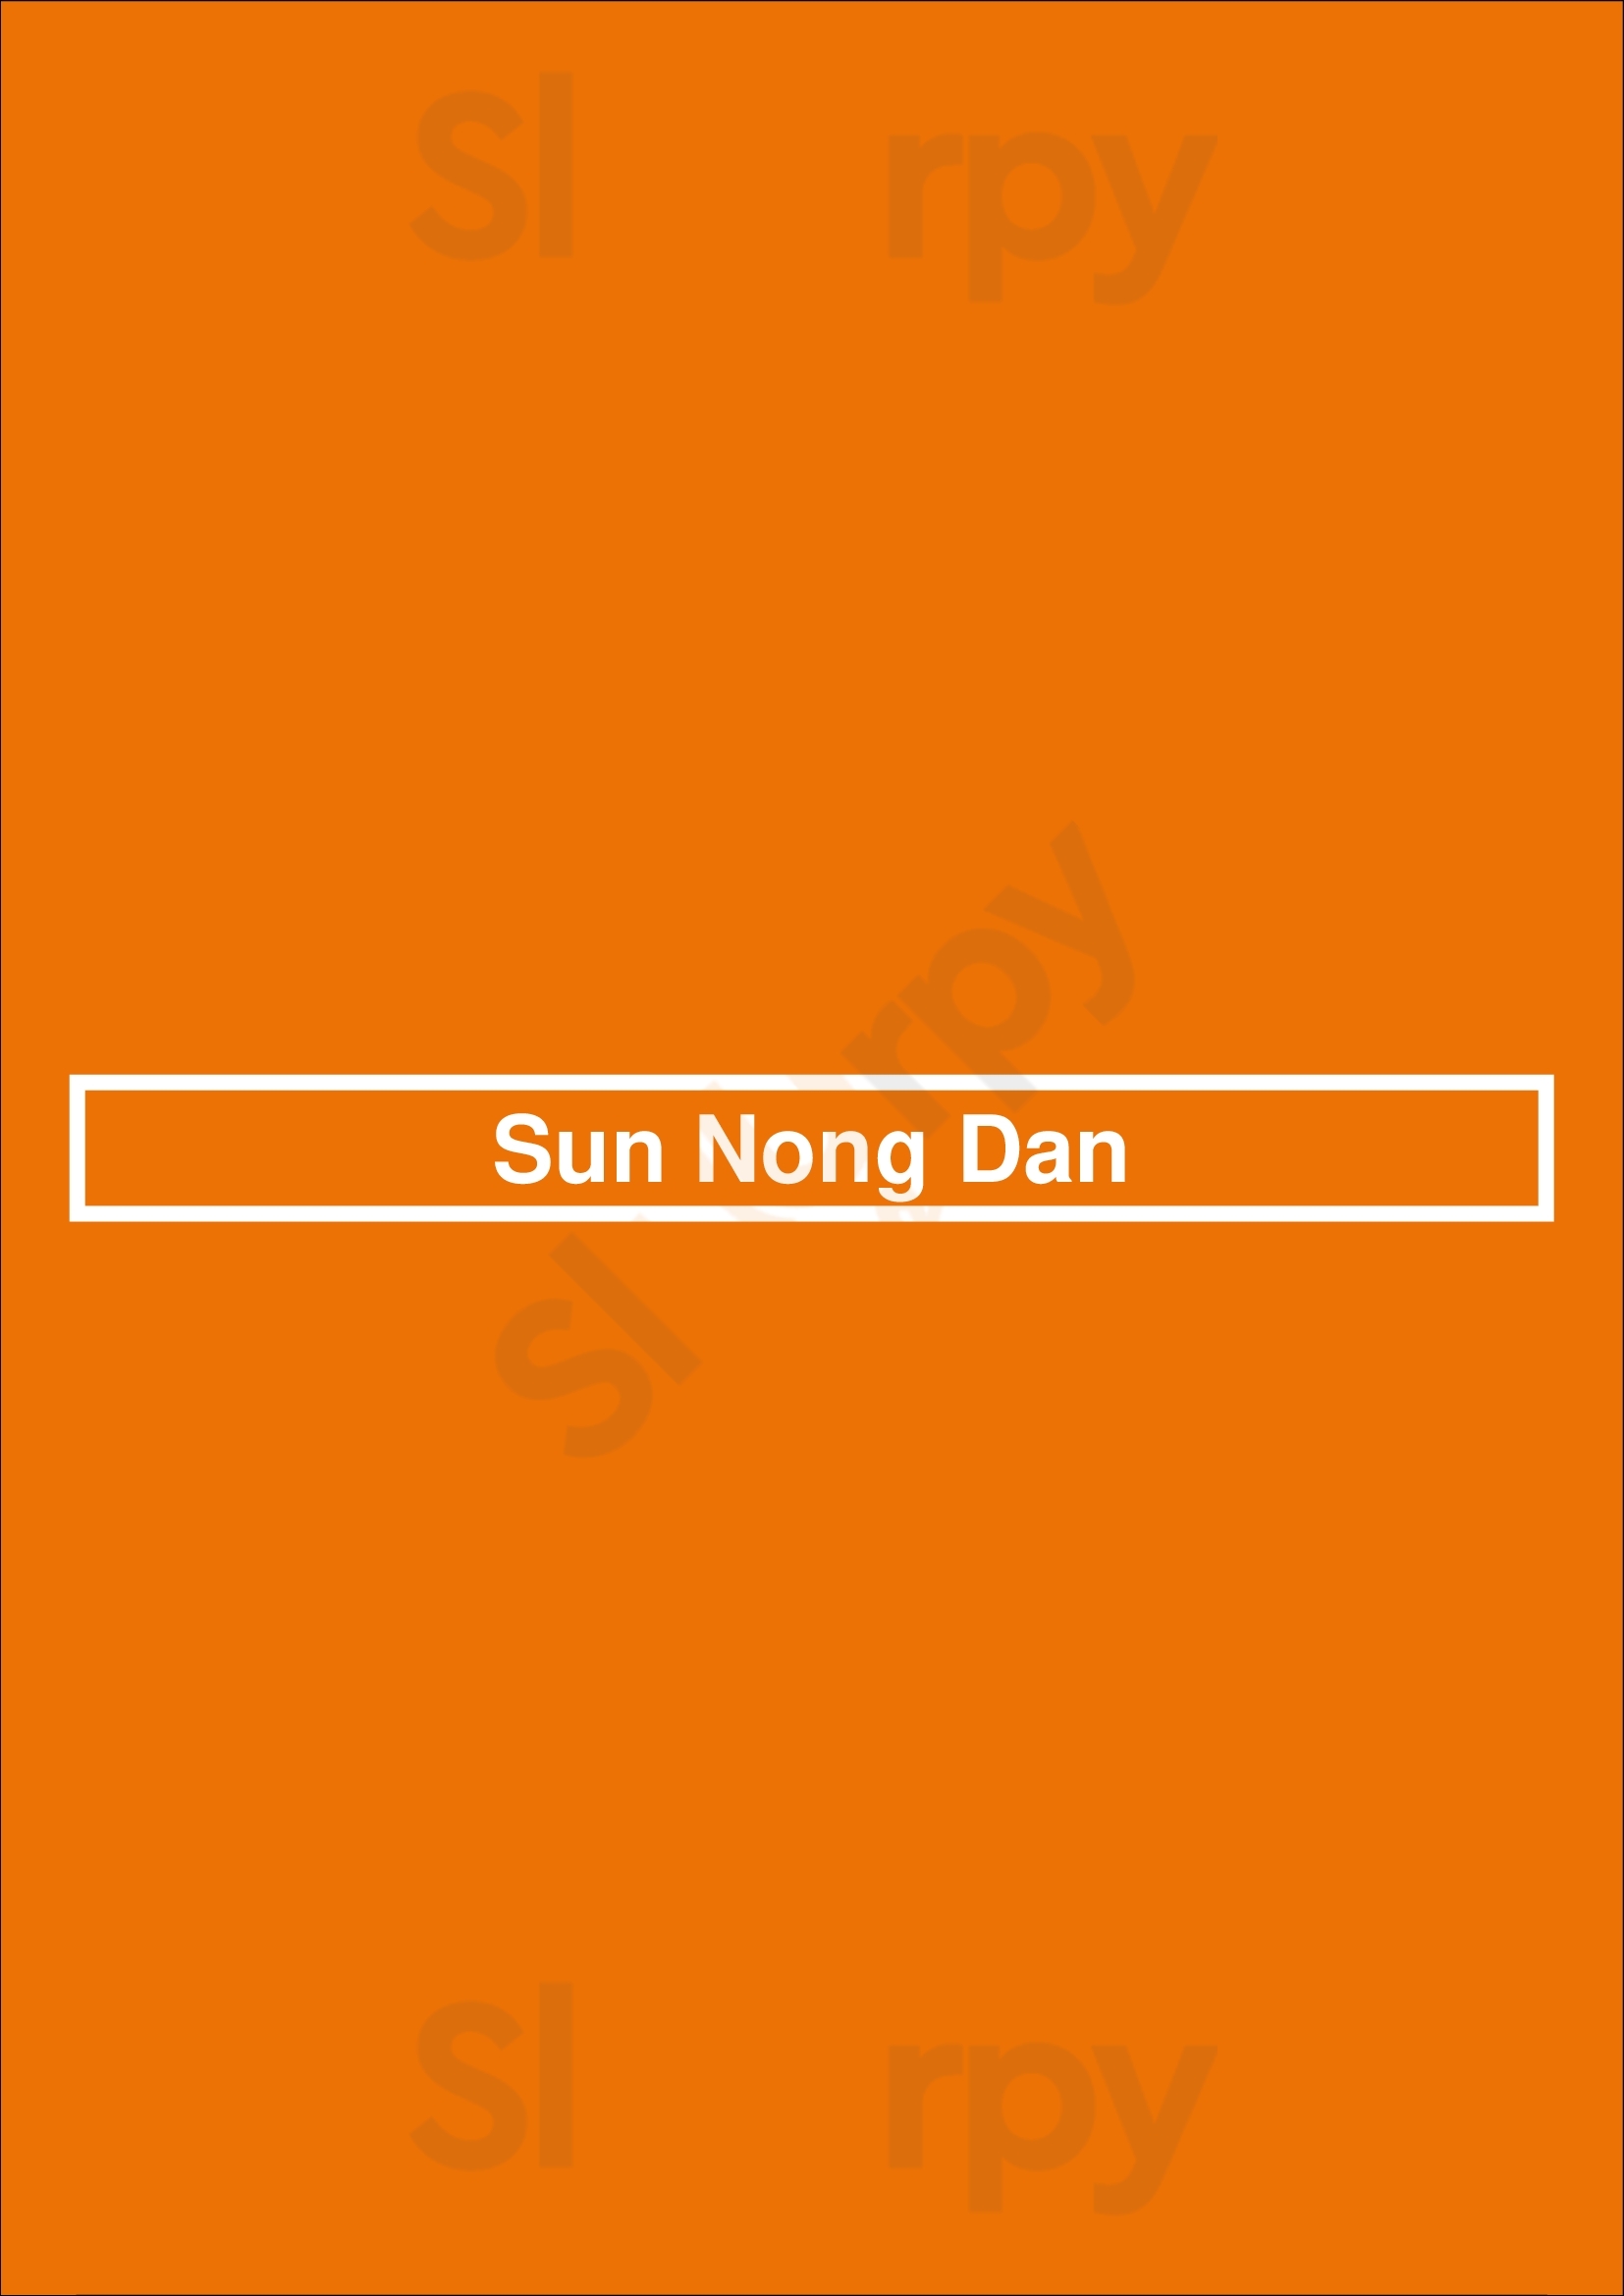 Sun Nong Dan Los Angeles Menu - 1